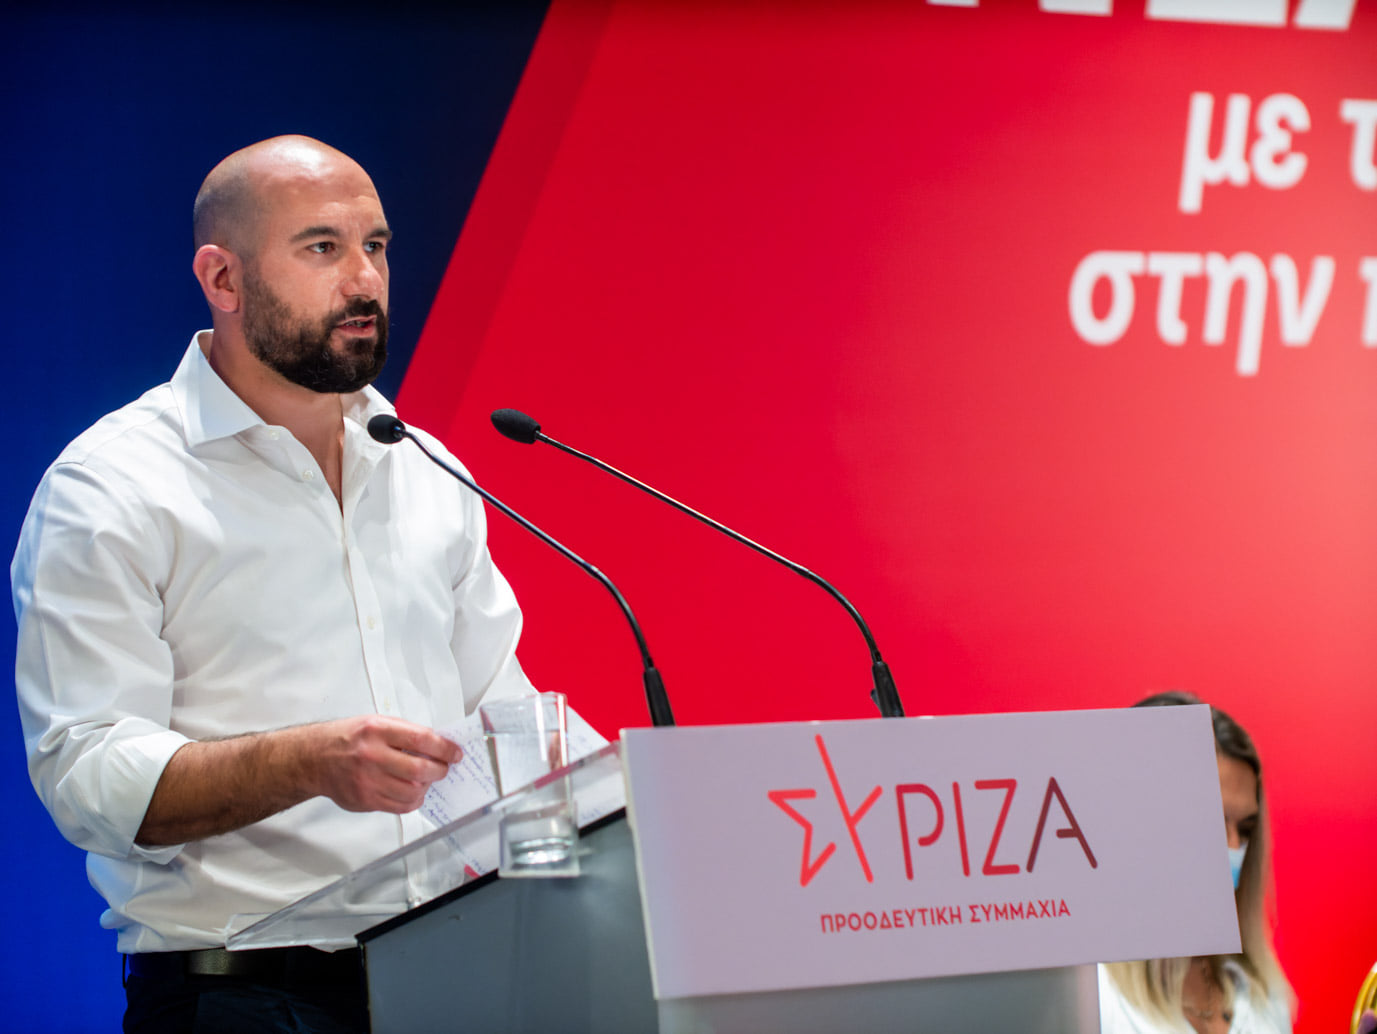 Δ. Τζανακόπουλος: Είναι στο DNA της οικογένειας Μητσοτάκη, το ζήτημα των παρακολουθήσεων - Δε μπορούν χωρίς αυτό να λειτουργήσουν πολιτικά - Αυτή τη φορά δε θα είμαστε επιεικείς